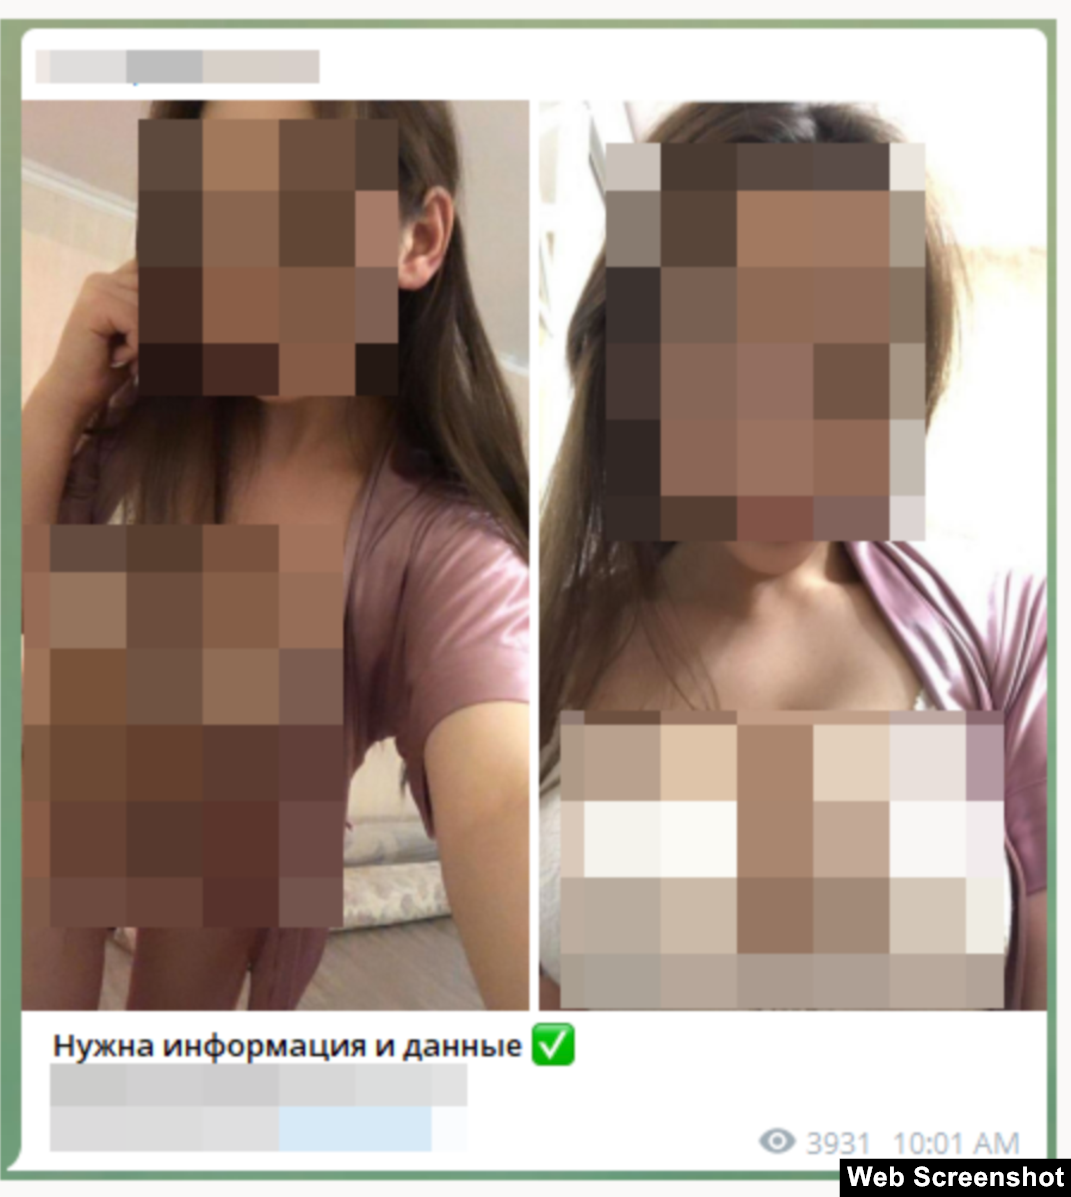 Girls Live Sex On Webcam In Kazakhstan